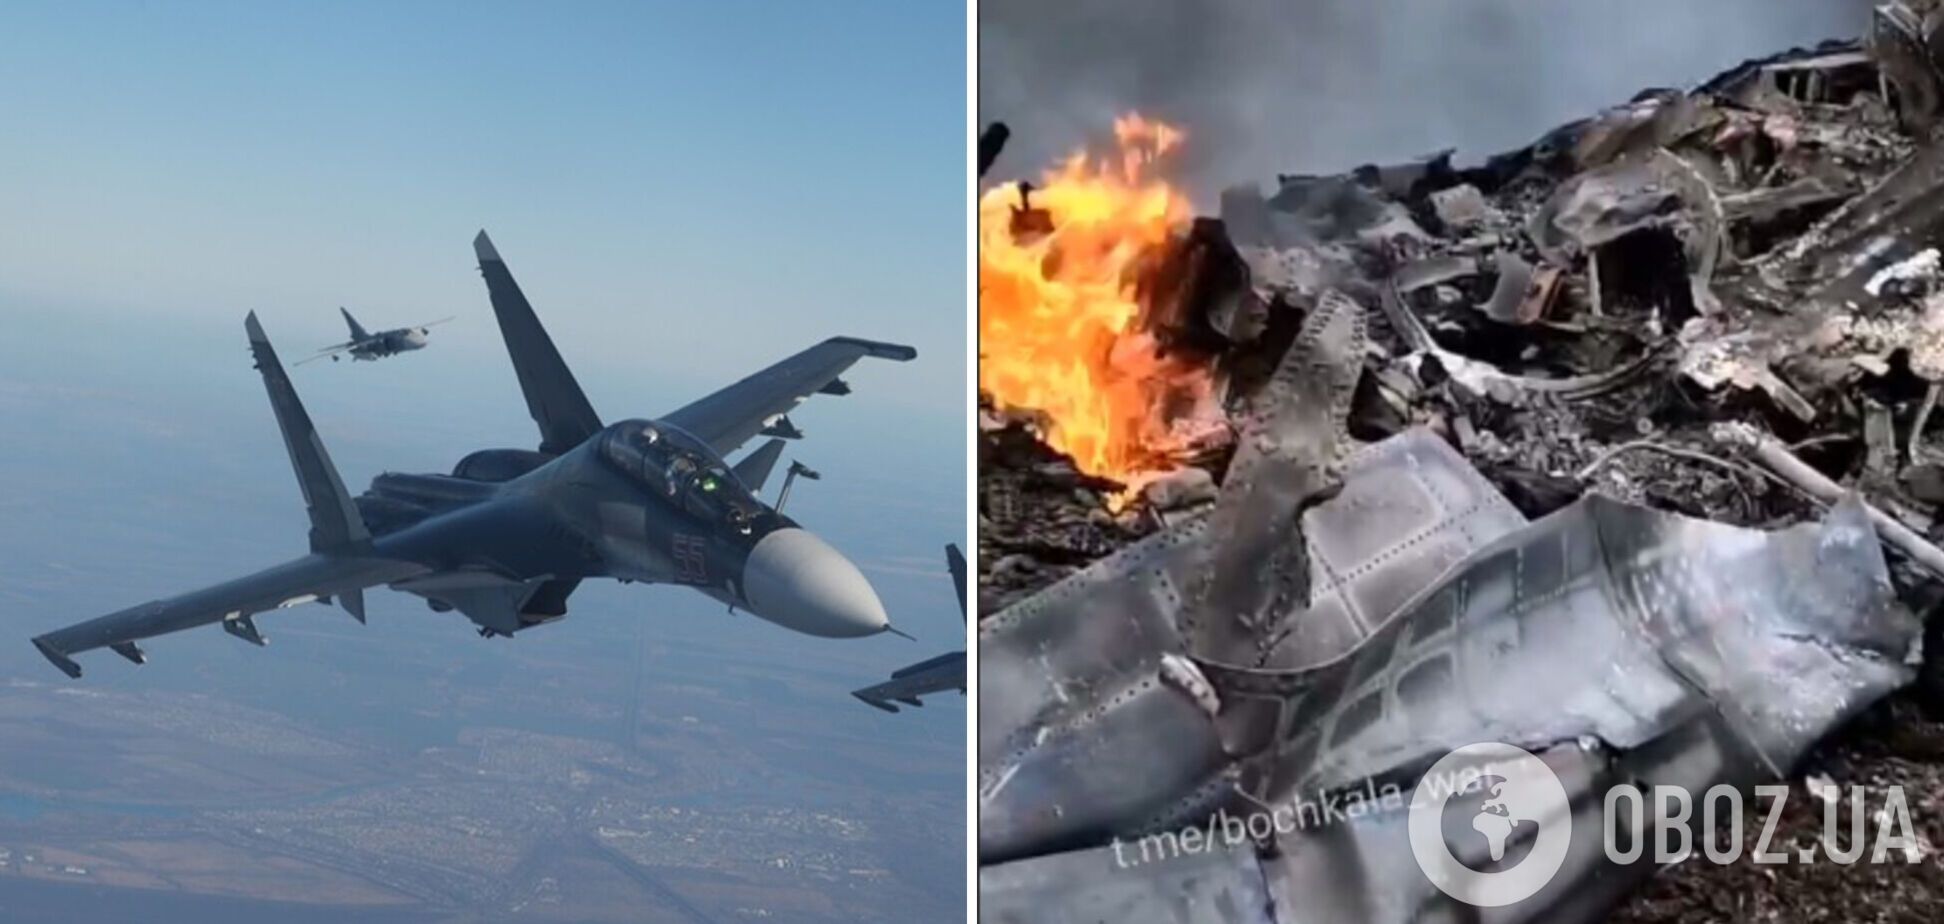 'Так горят 50 млн ВВС России': в сети показали на видео уничтоженный российский самолет